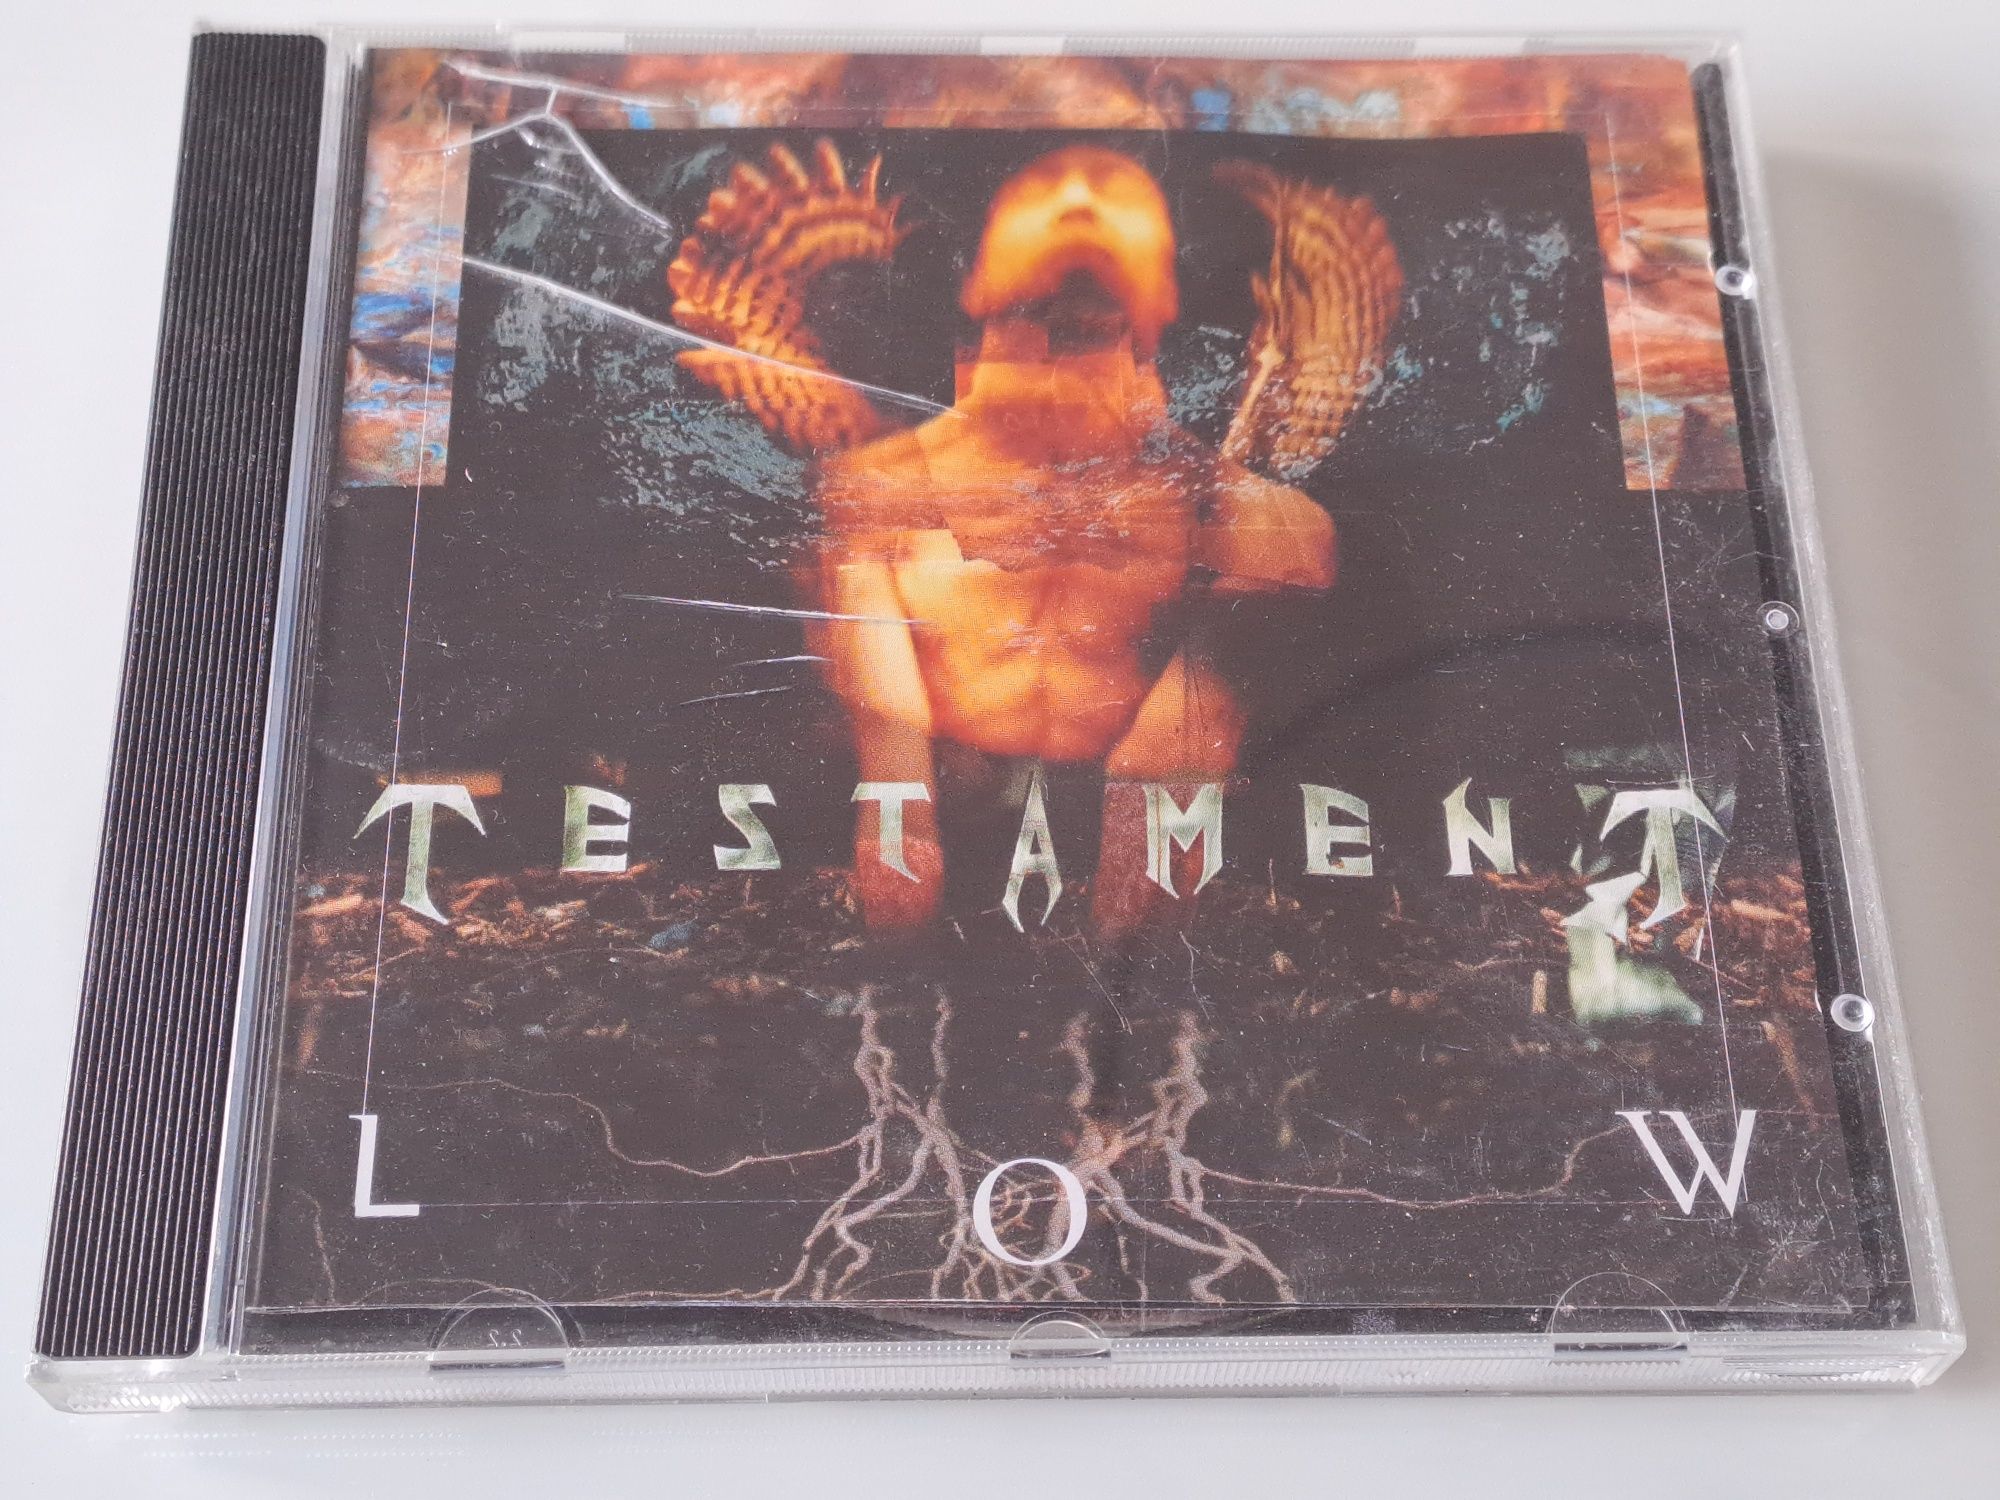 Testament "Low" CD